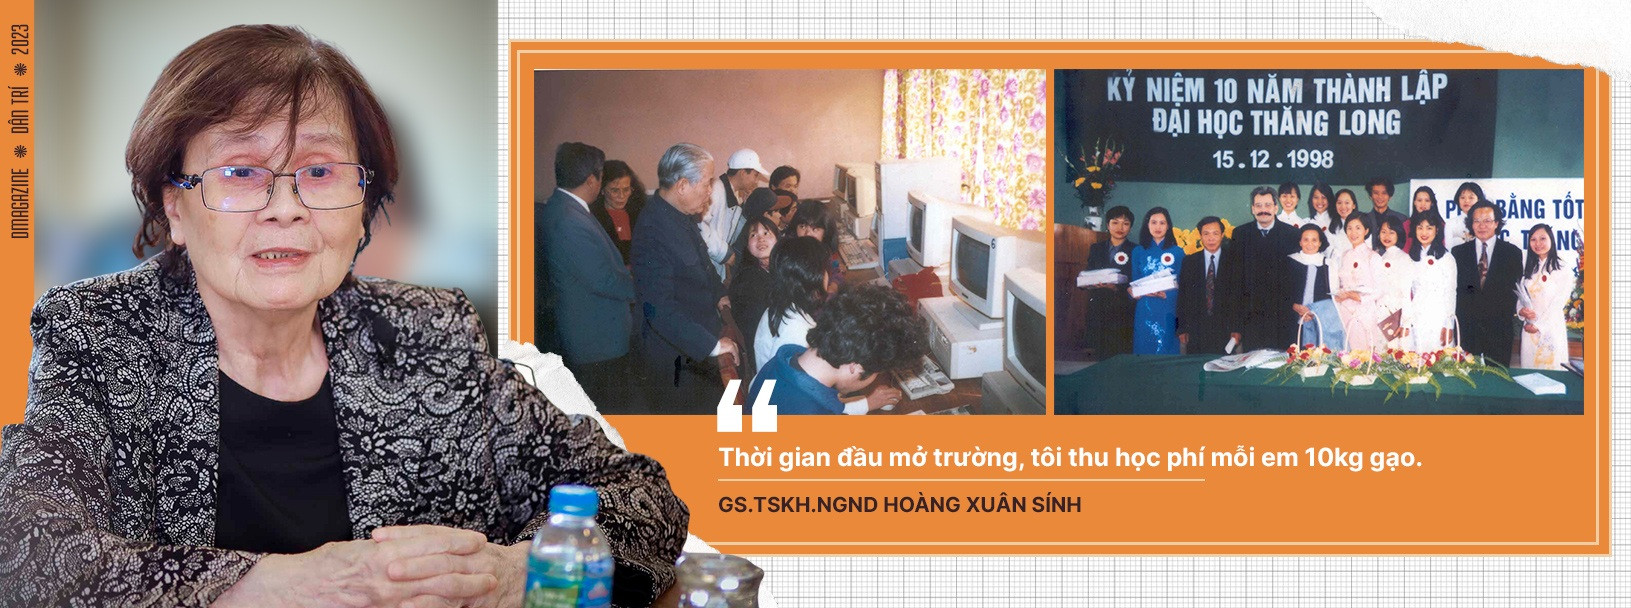 Nữ giáo sư toán đầu tiên của Việt Nam kể chuyện đóng học phí bằng 10kg gạo - 17